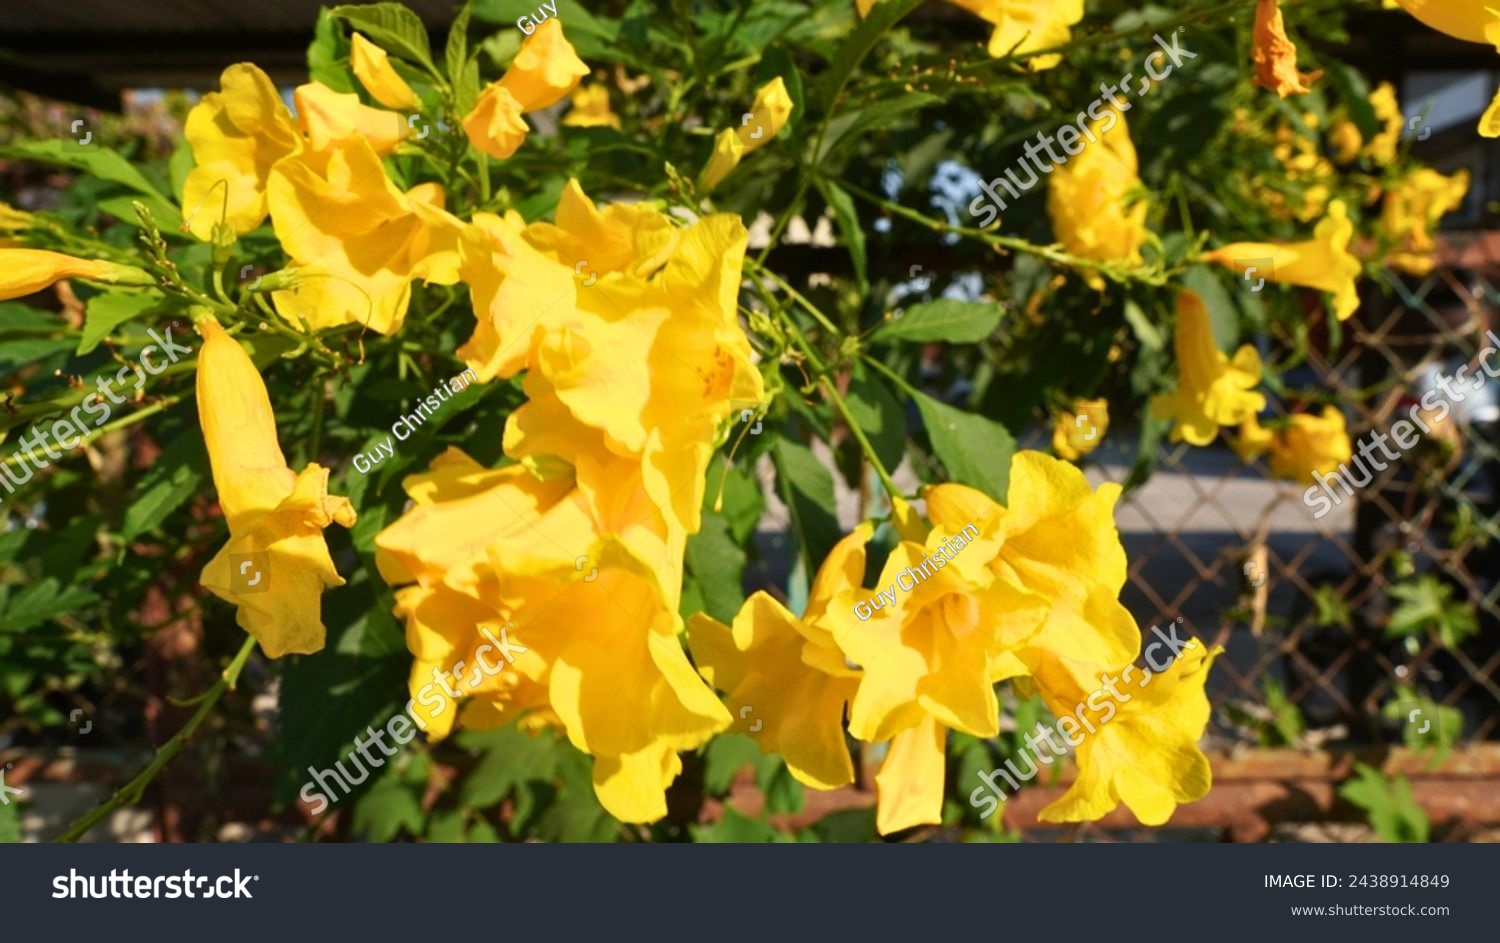 Yellow elder flowers. Golden Elegance: Yellow Elder Flower in Bloom. #2438914849